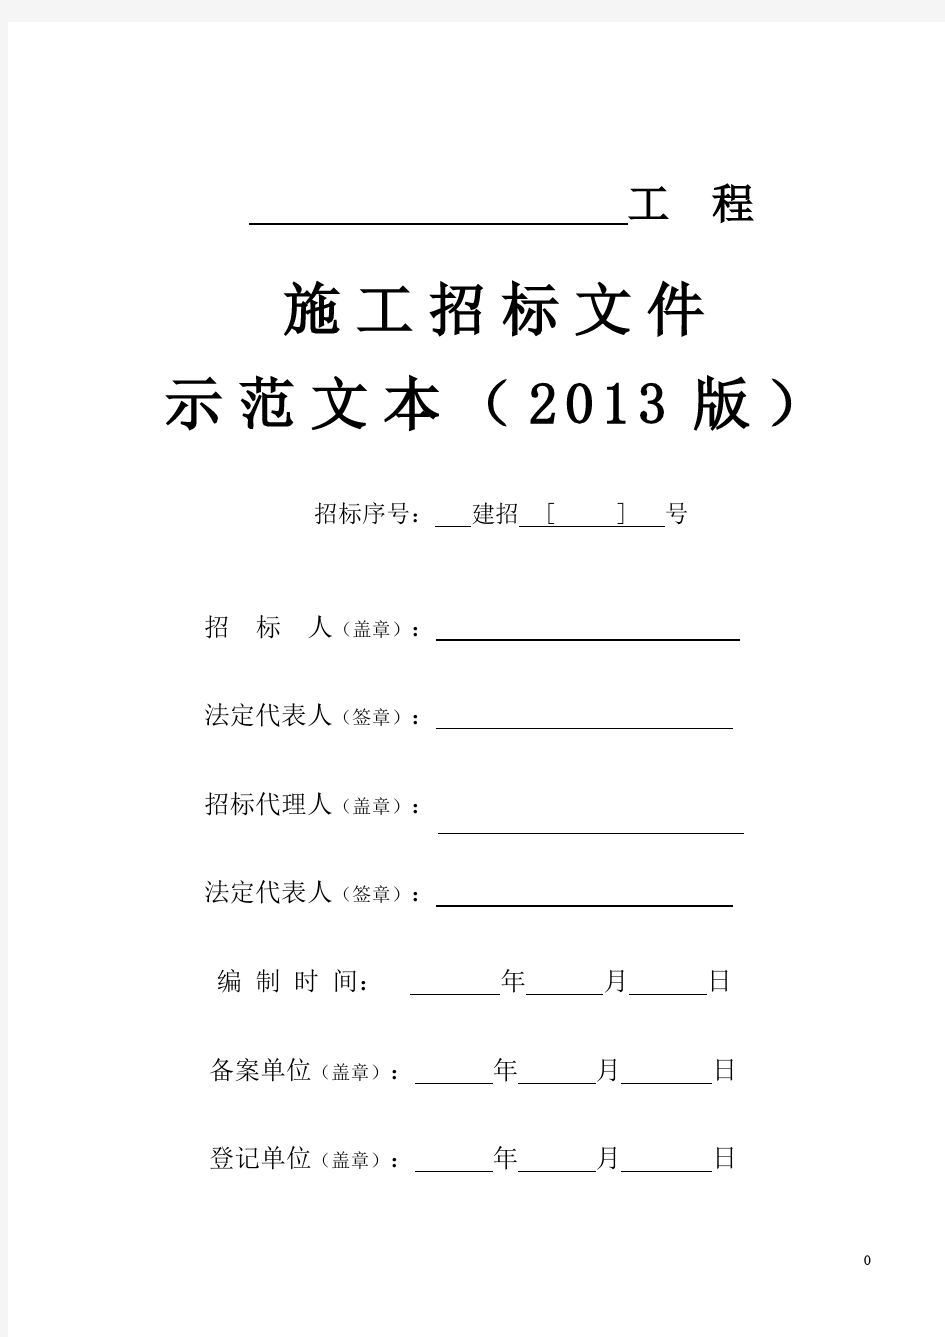 施工招标文件示范文本(2013版)